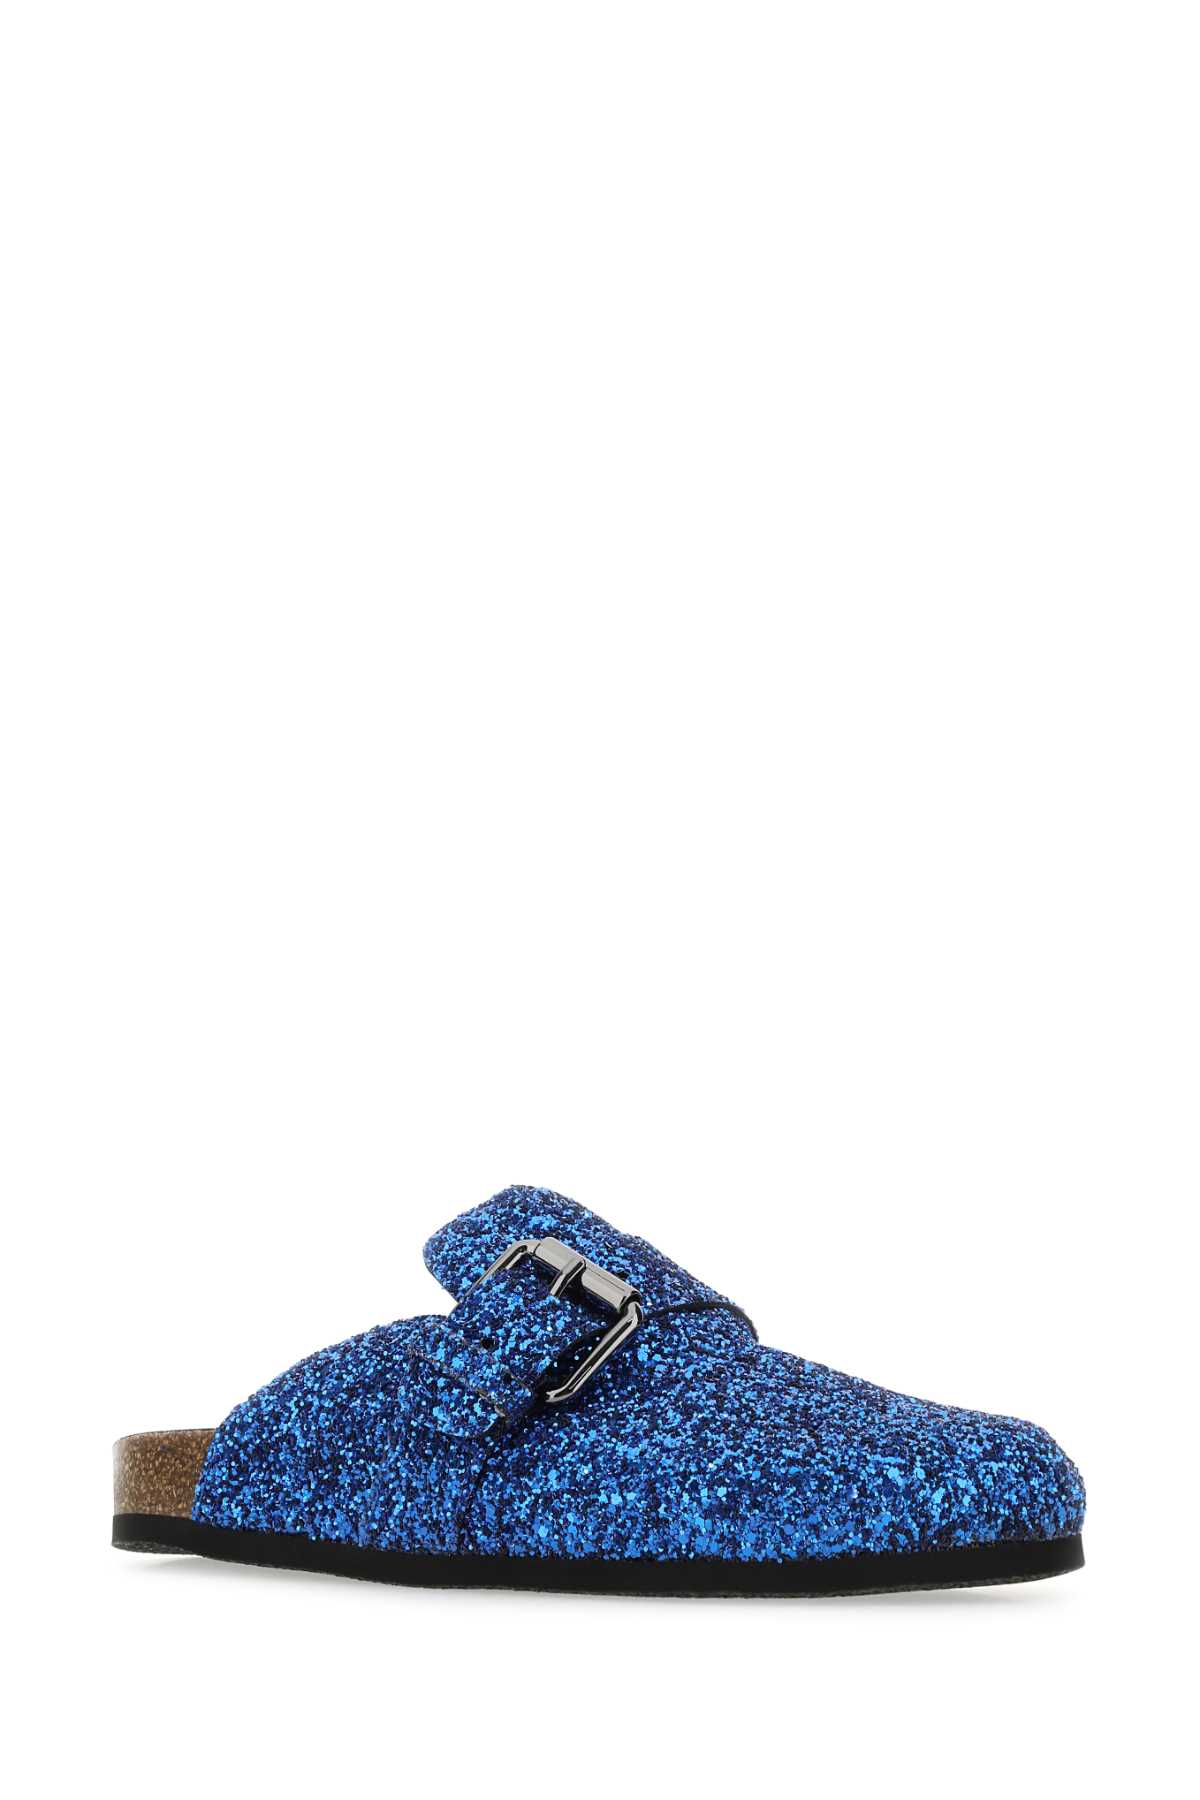 Shop Philosophy Di Lorenzo Serafini Electric Blue Glitters Slippers